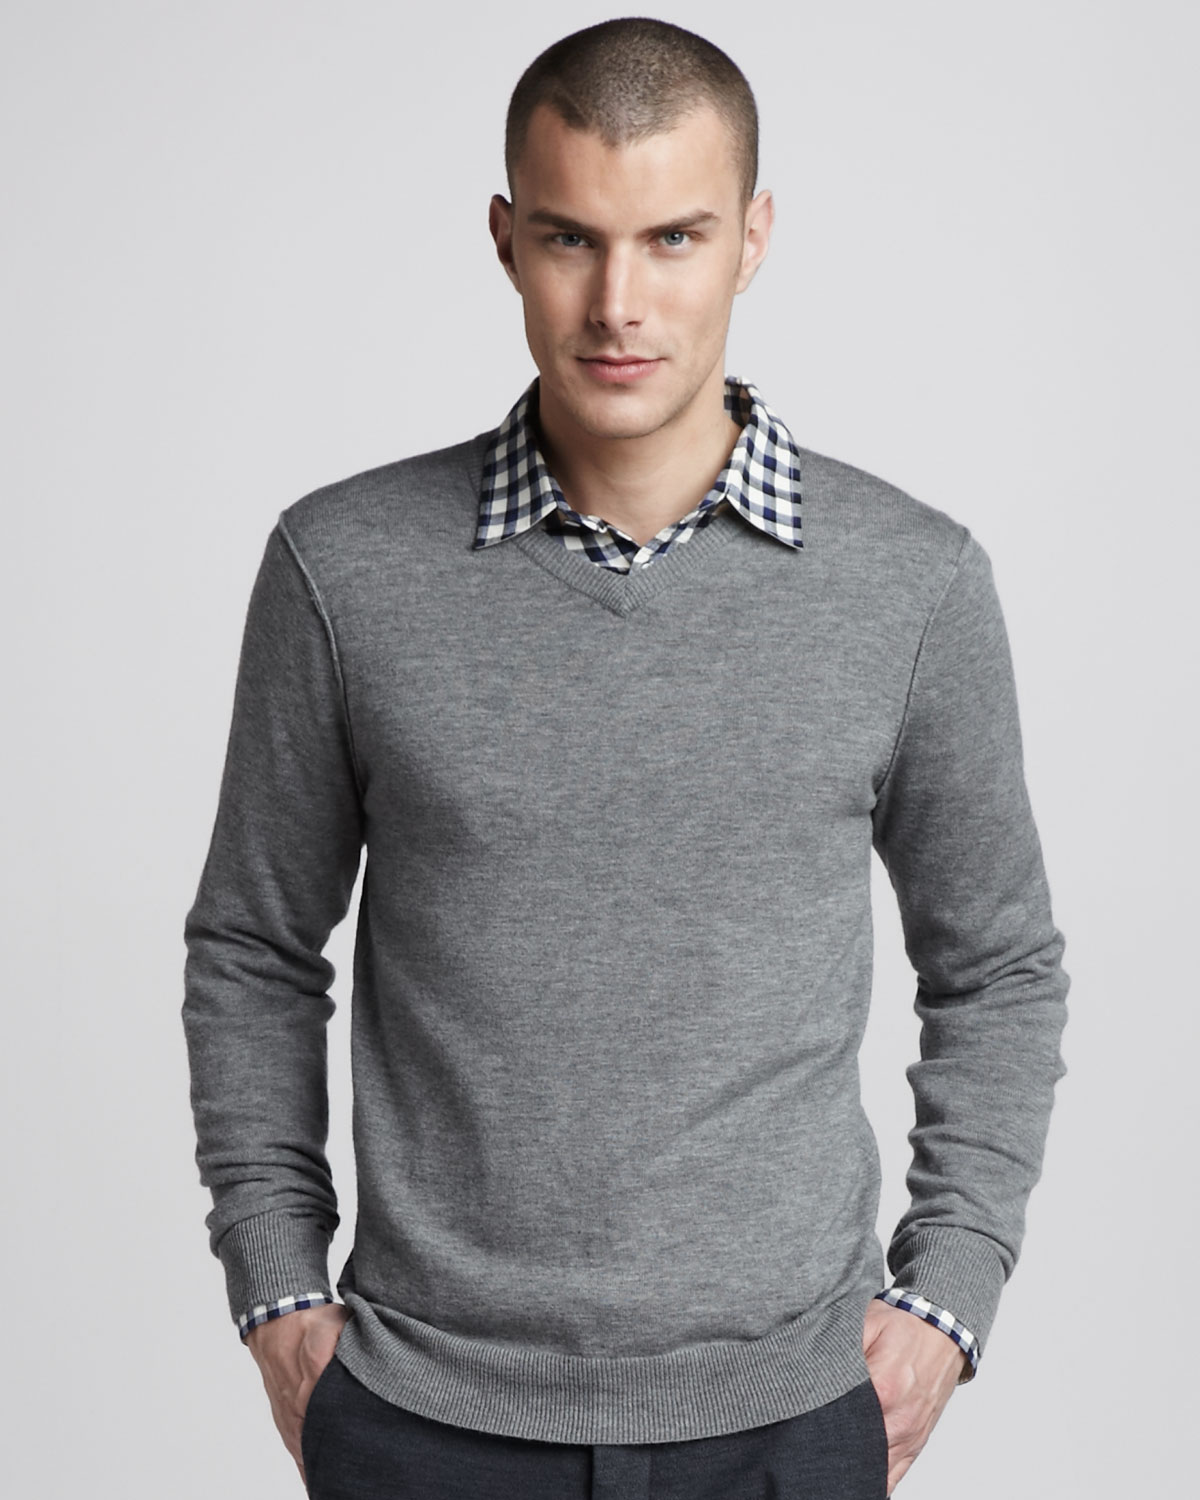 Lyst - Rag & bone V-neck Merino Sweater in Gray for Men